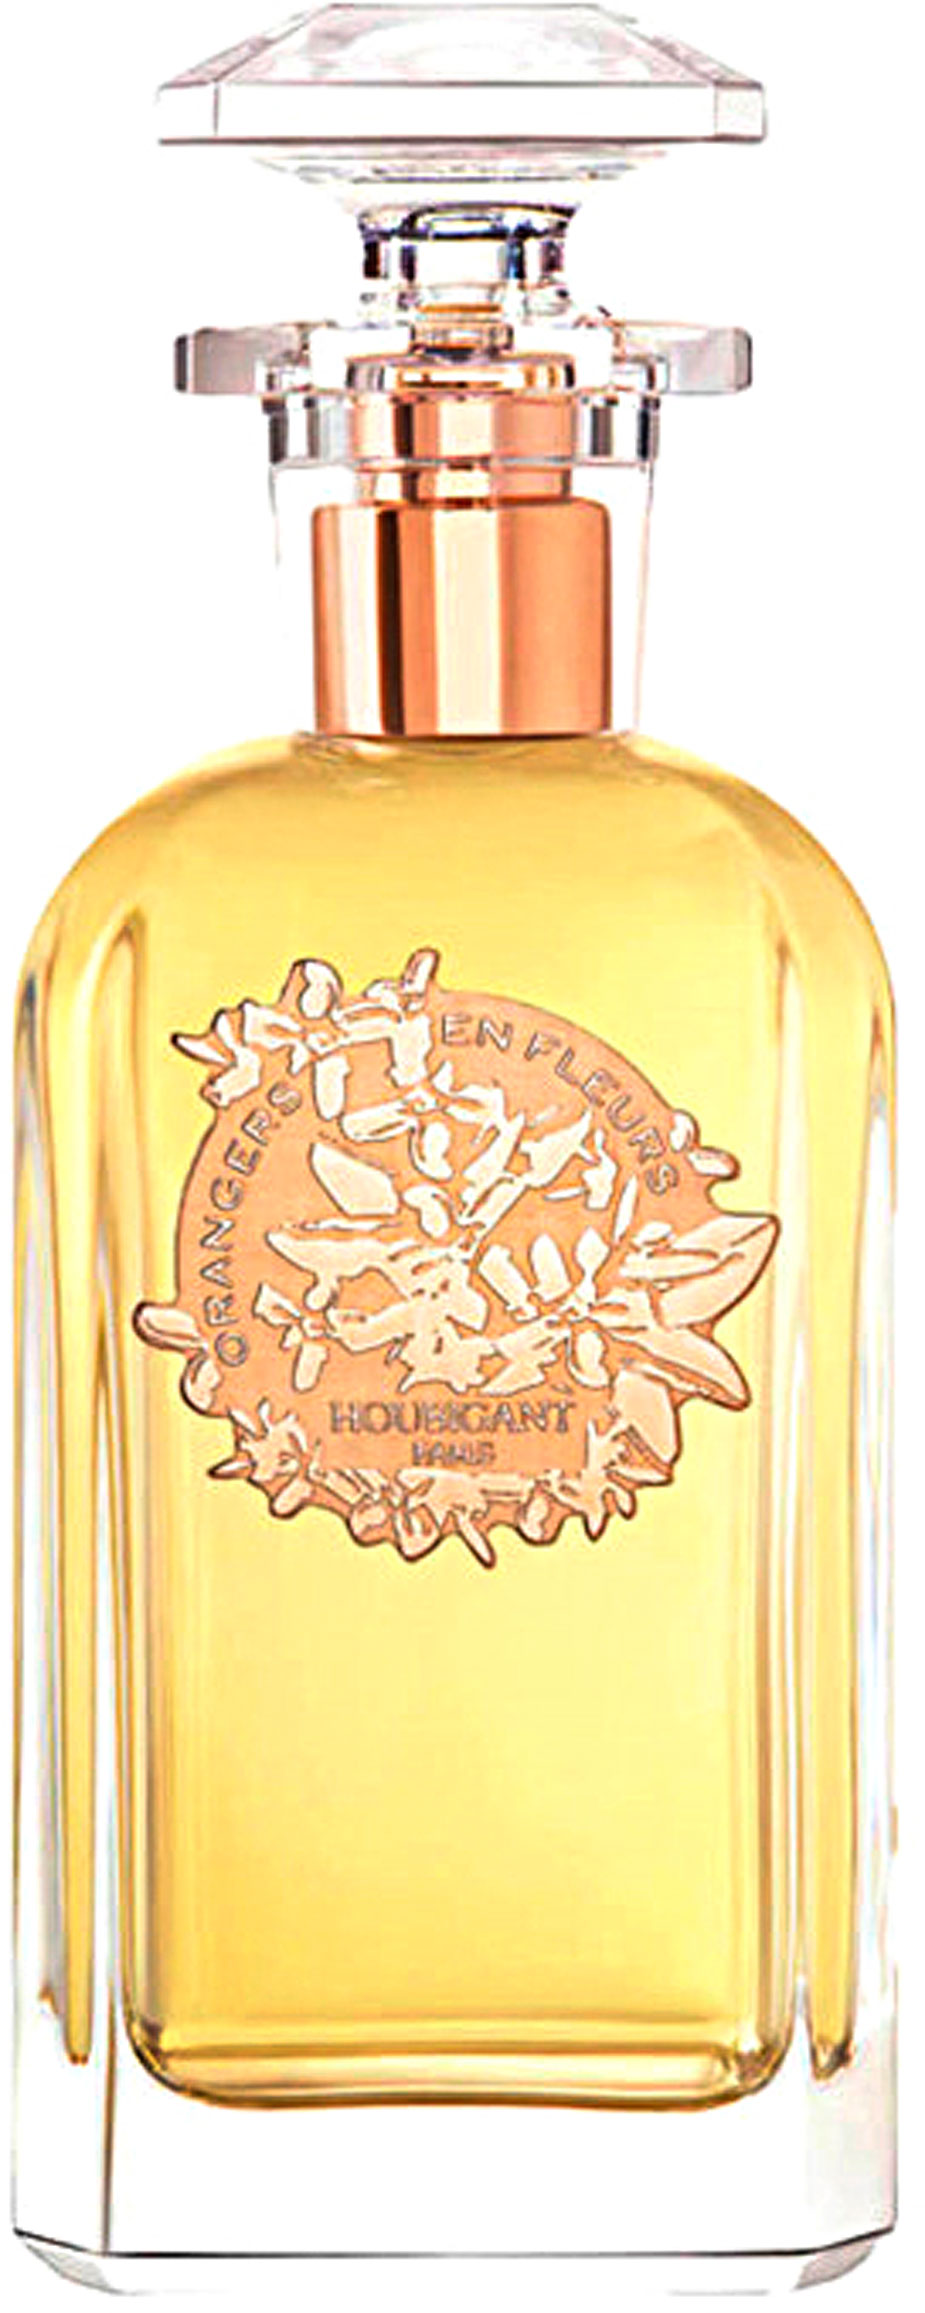 ORANGERS EN FLEURS - EAU DE PARFUM - 100 ML, Womens Fragrances ...